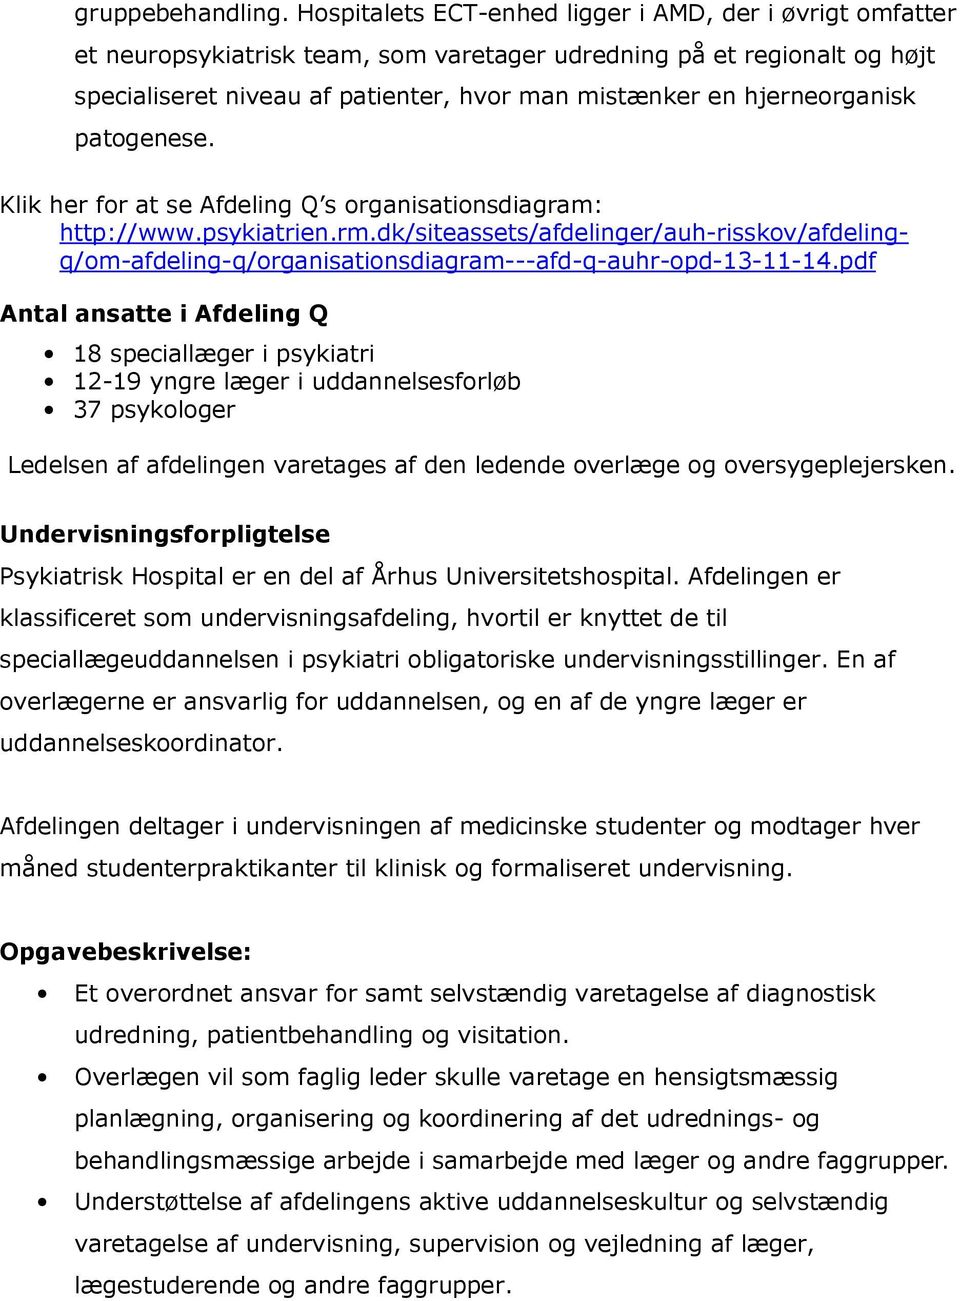 hjerneorganisk patogenese. Klik her for at se Afdeling Q s organisationsdiagram: http://www.psykiatrien.rm.